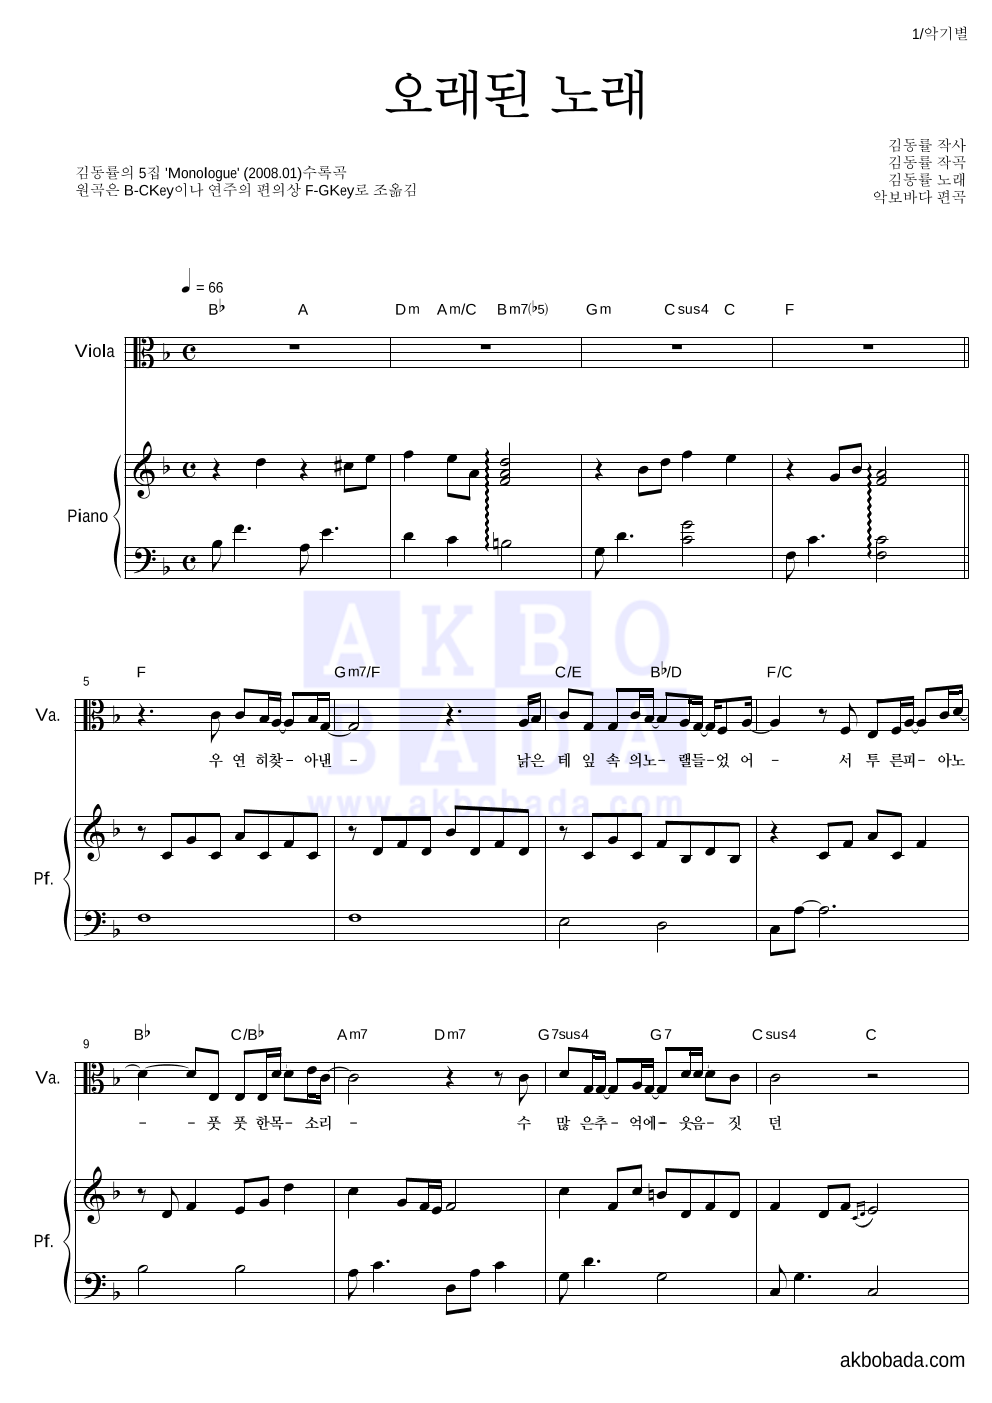 김동률 - 오래된 노래 비올라&피아노 악보 